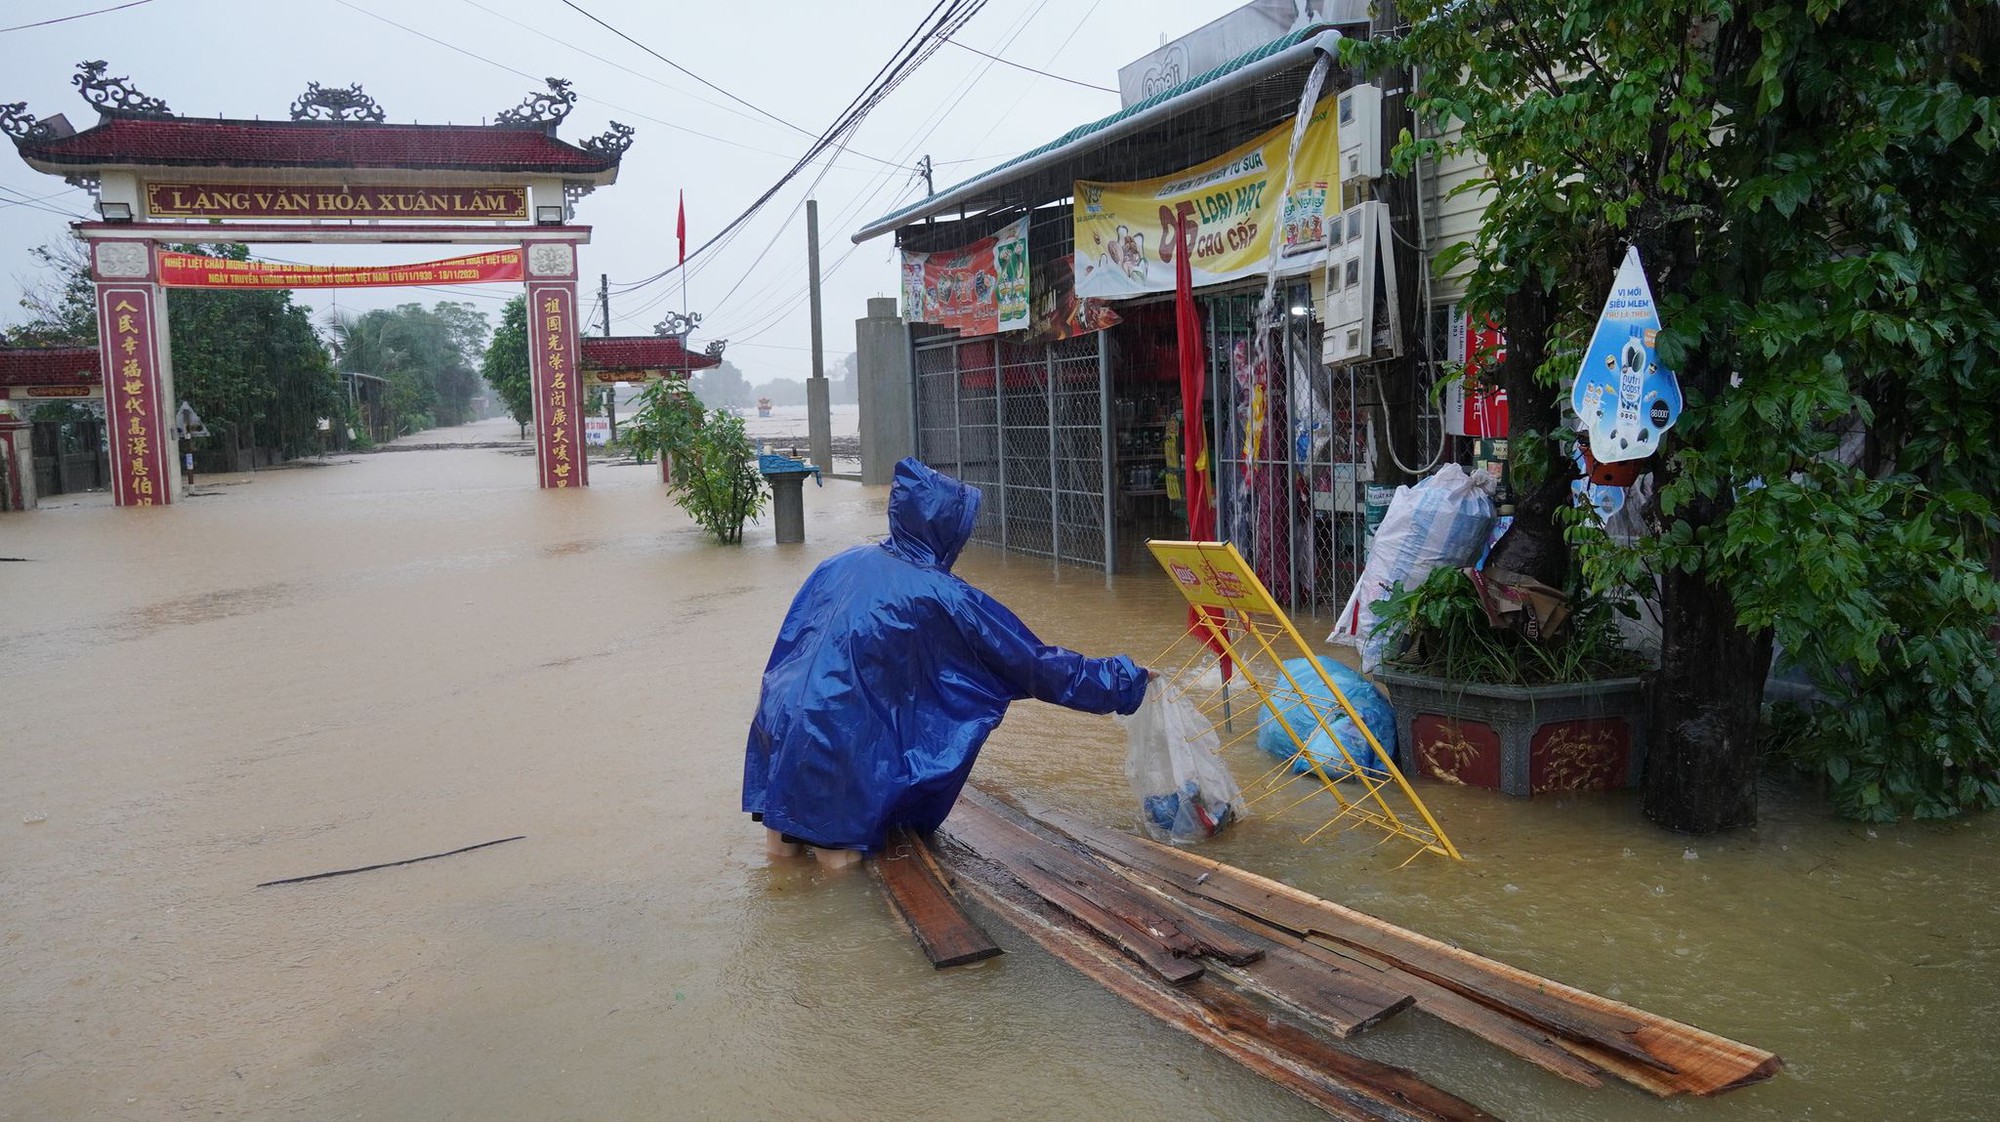 Thư kêu gọi ủng hộ miền Trung thiệt hại do mưa lũ là giả mạo - Ảnh 2.